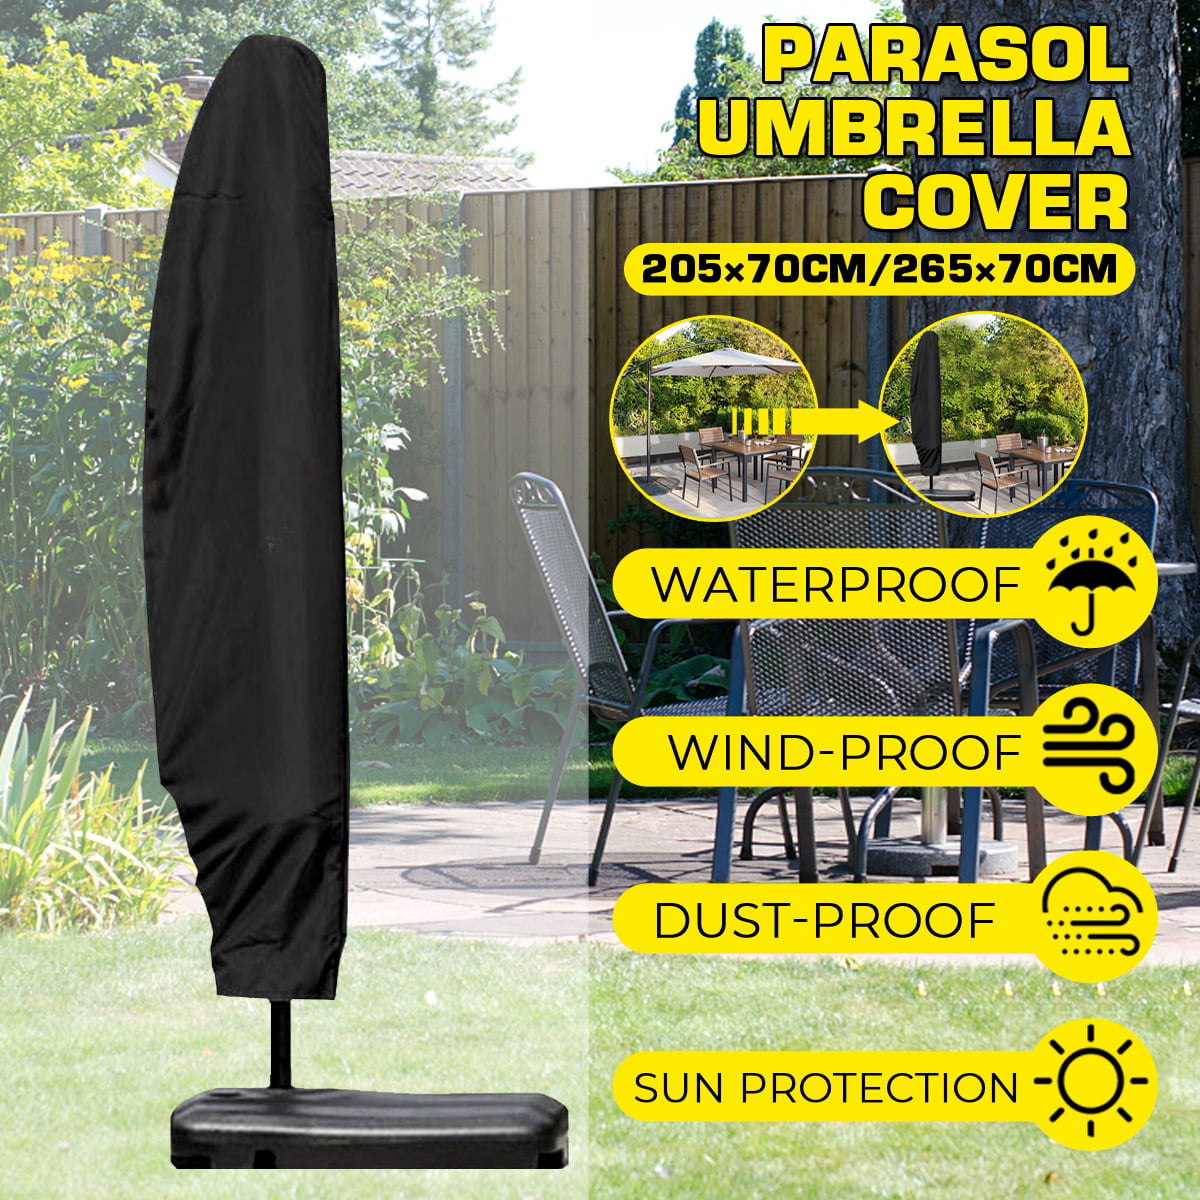 Large Waterproof Parasol Banana Cantilever Umbrella Cover Patio Garden Outdoor 